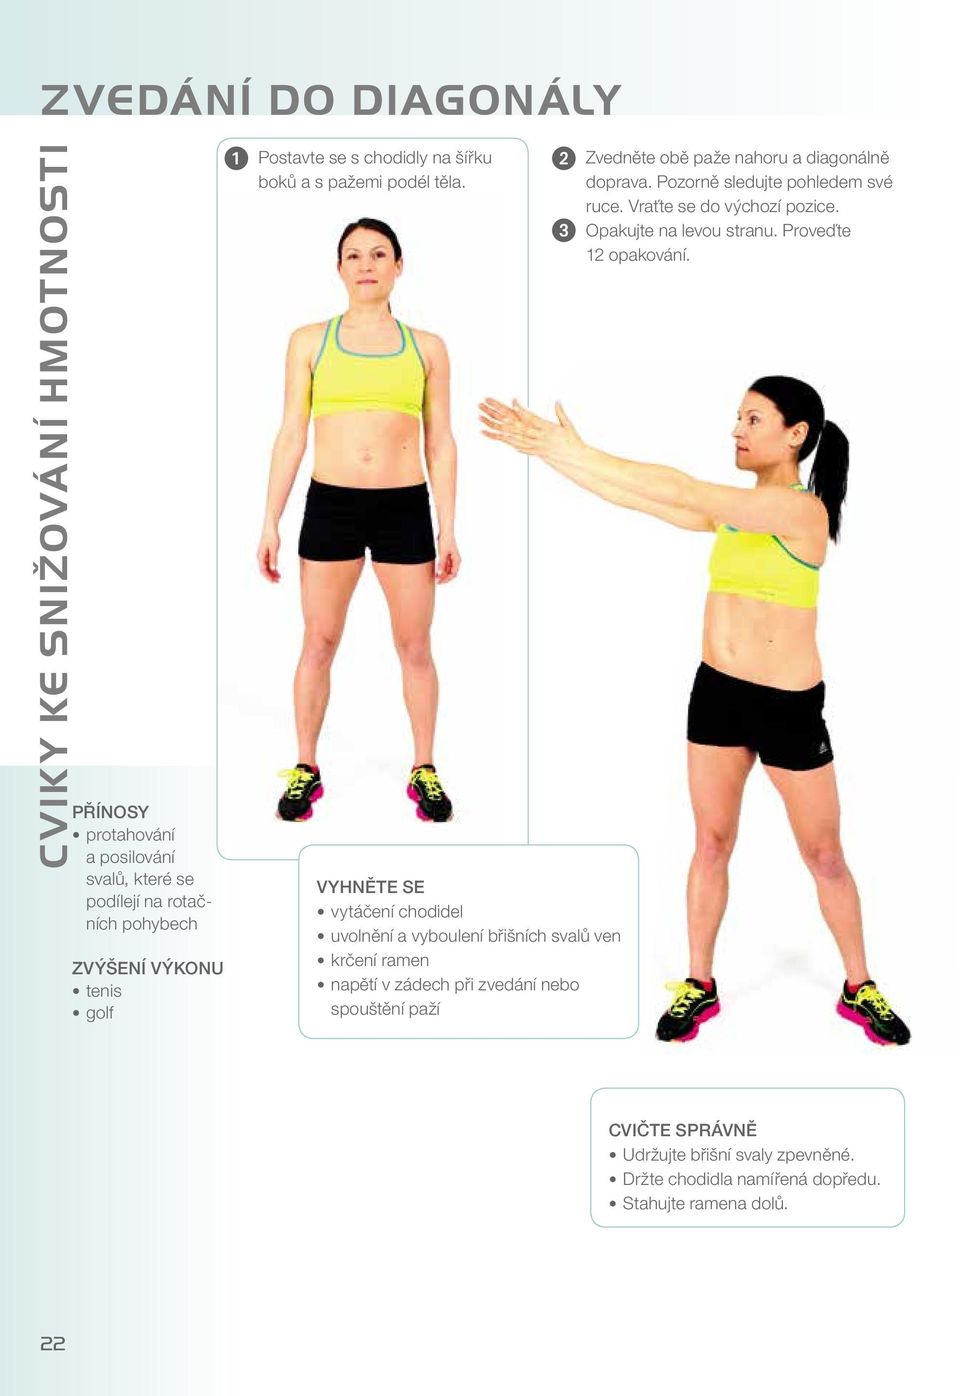 3 VYHNĚTE SE vytáčení chodidel uvolnění a vyboulení břišních svalů ven krčení ramen napětí v zádech při zvedání nebo spouštění paží Zvedněte obě